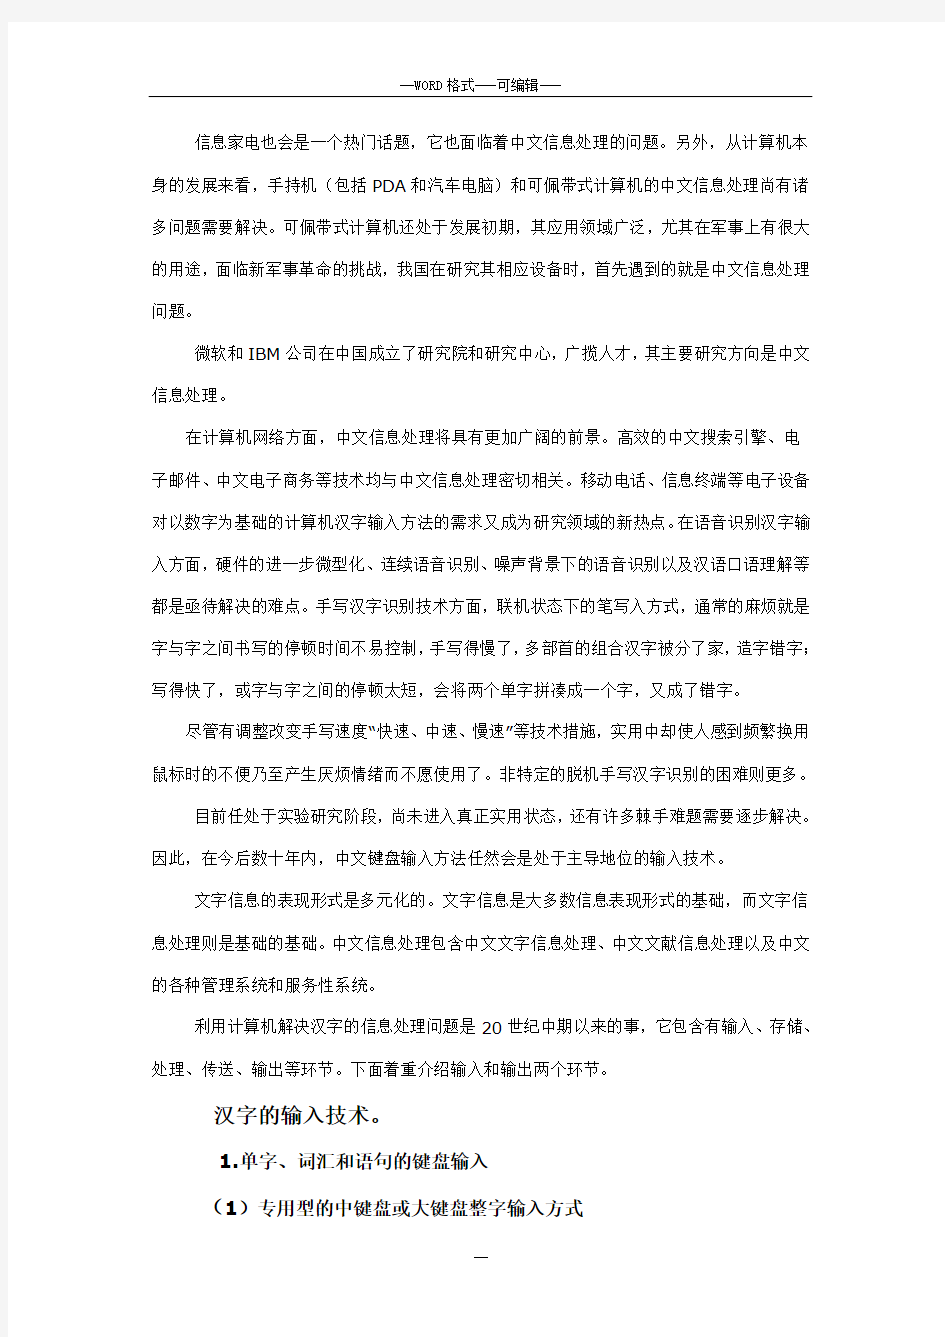 中文信息处理的应用的研究报告